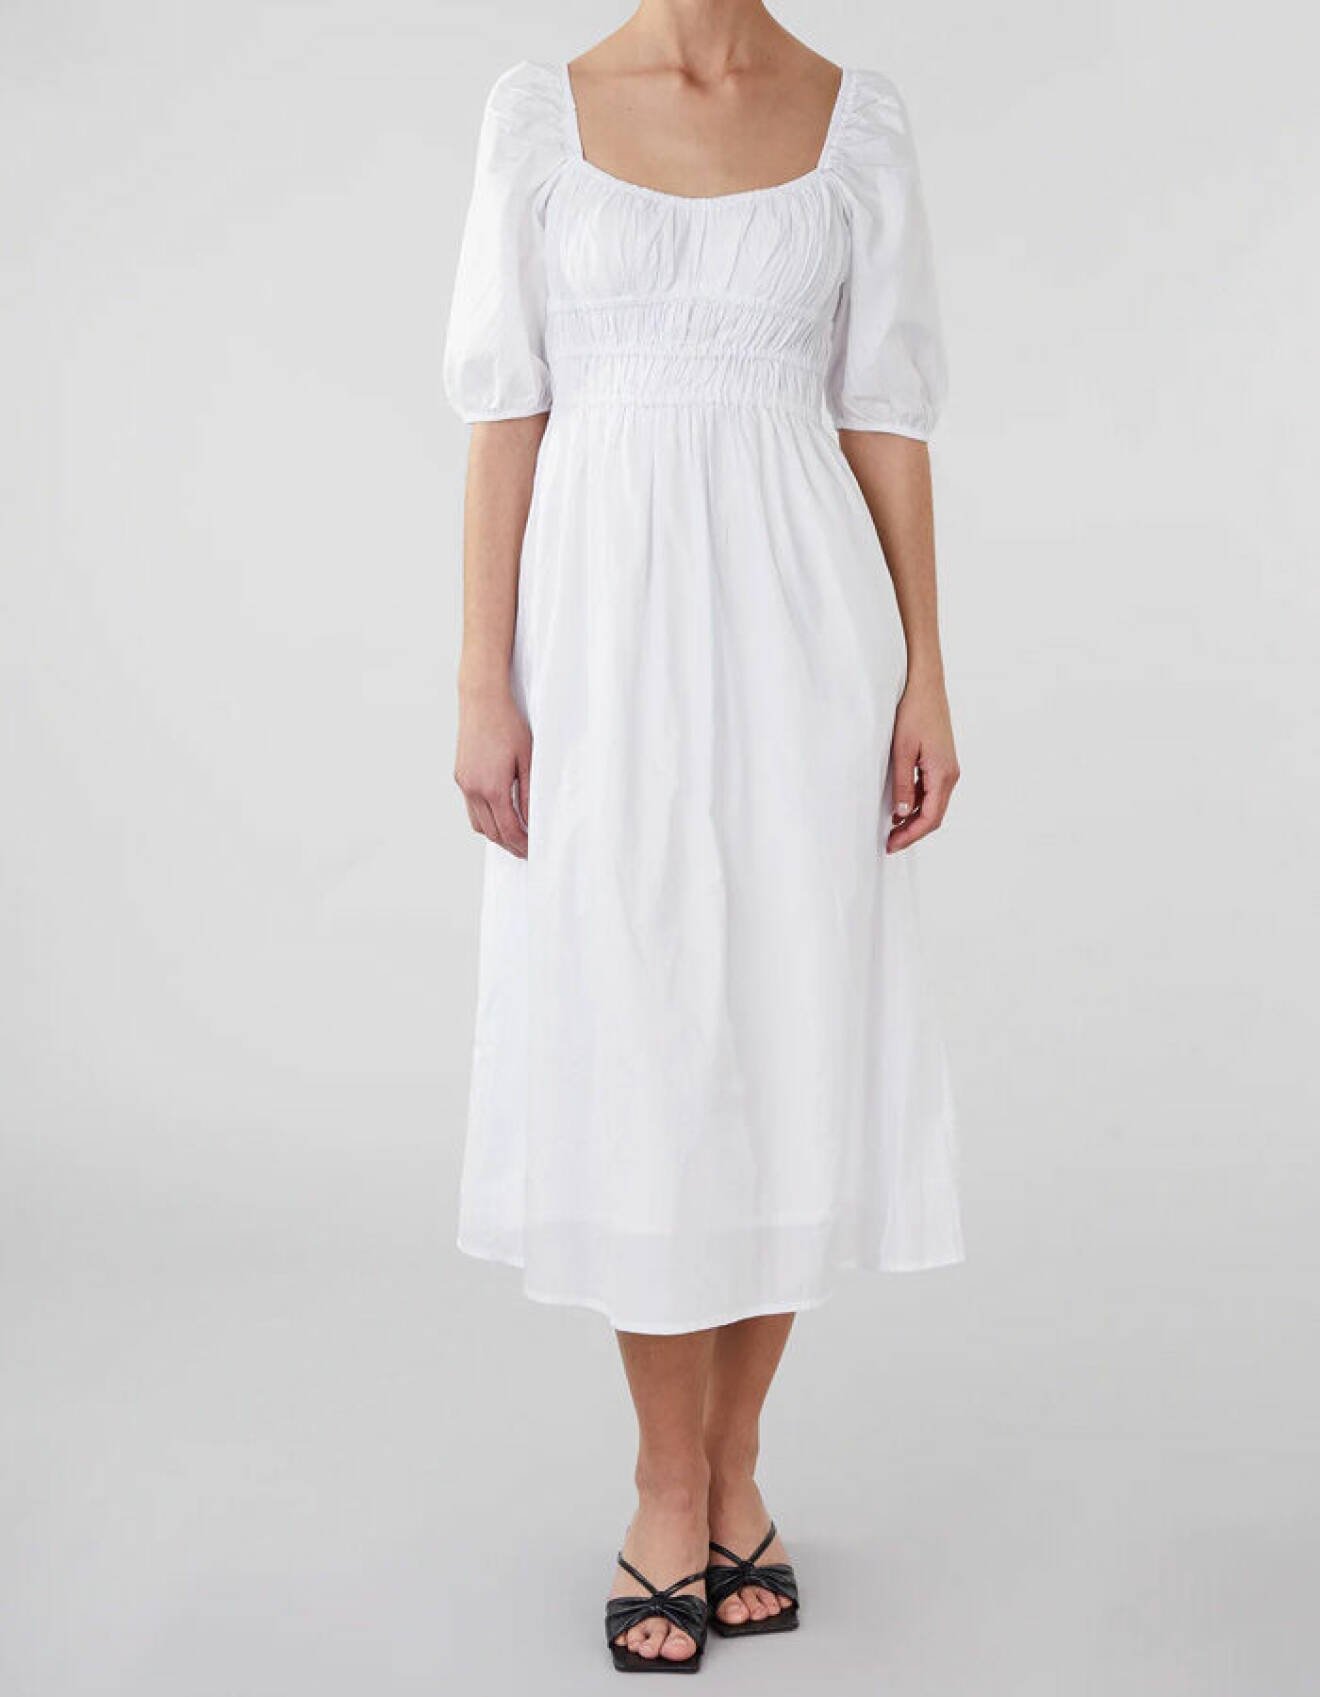 modenyheter dam våren 2022 – vit midiklänning från Faithfull the Brand